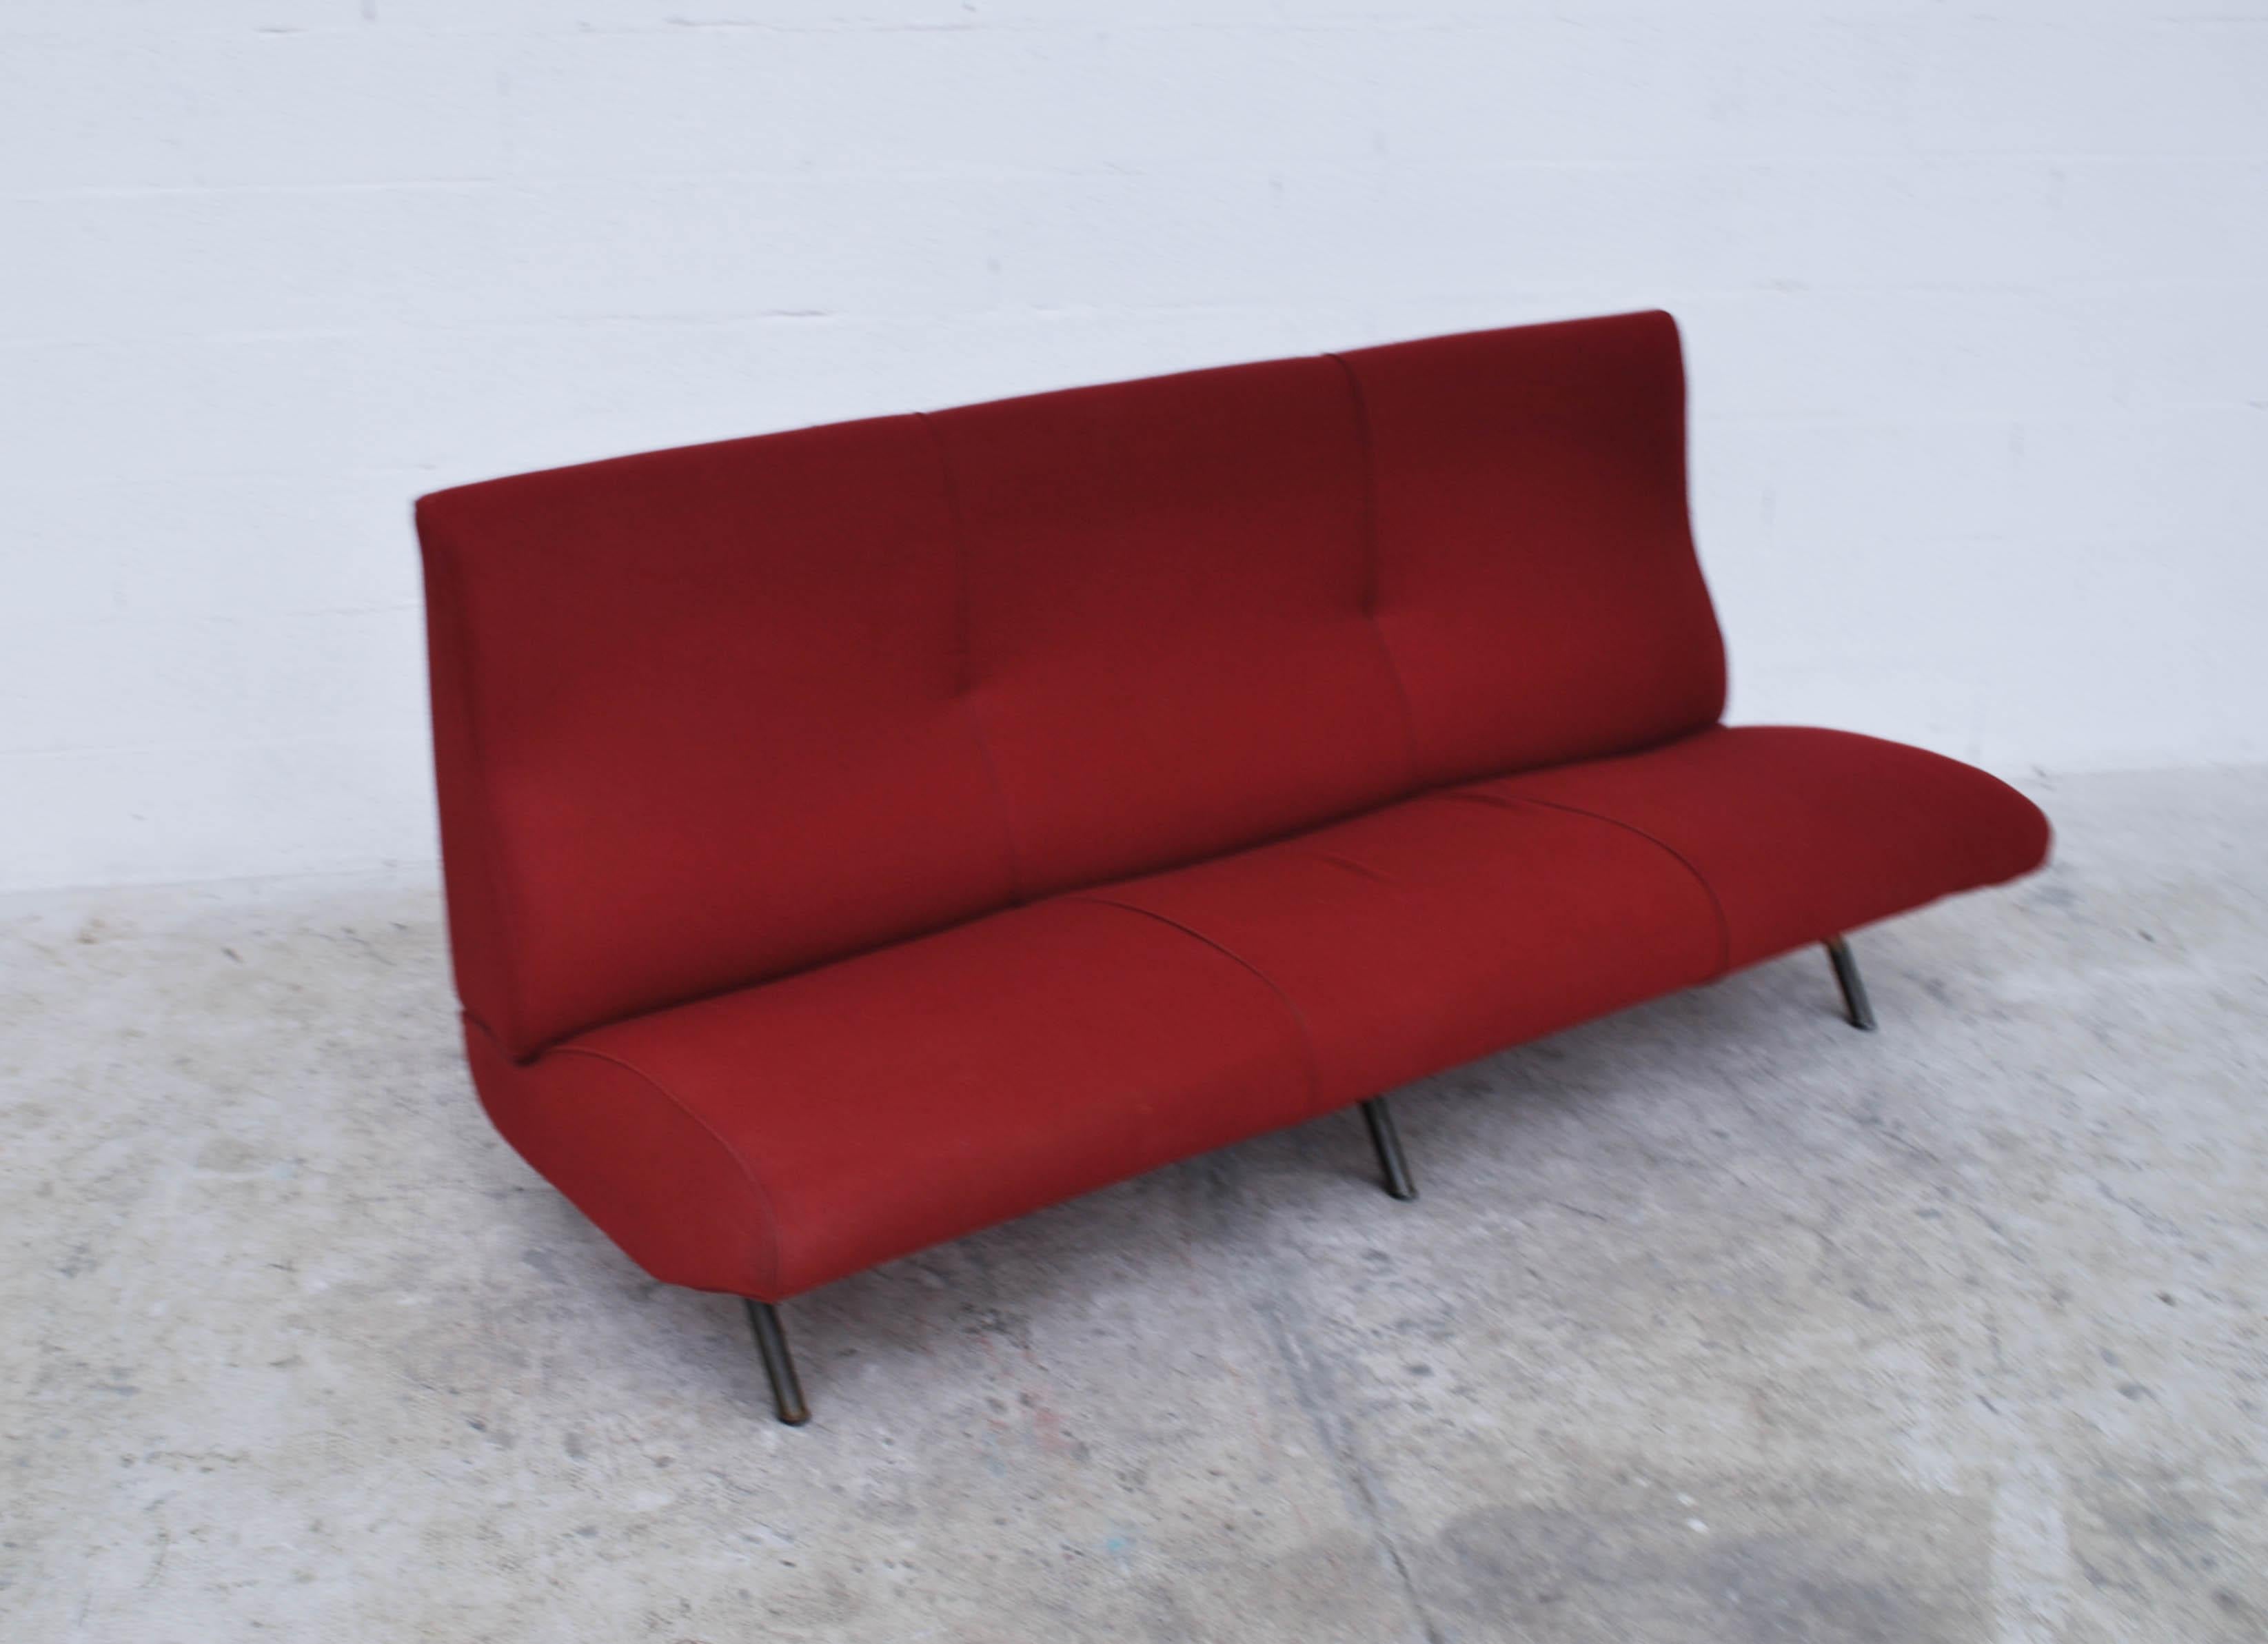 Mid-20th Century Divano Triennale 3 Seater Sofa Design by Marco Zanuso for Arflex 50s, 60s For Sale